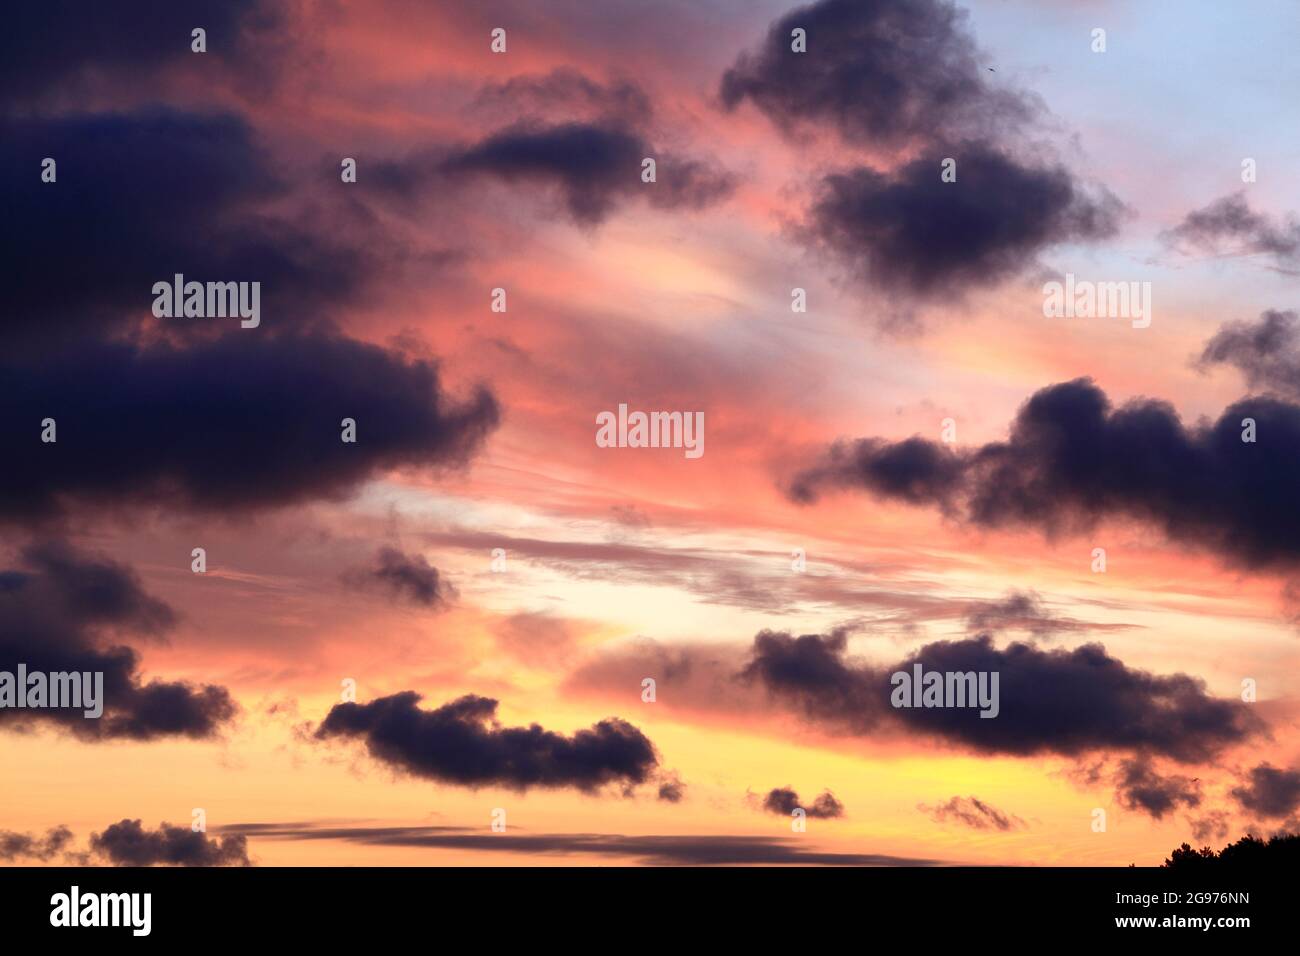 Sonnenaufgang, gelb, rosa, blauer Himmel, Himmel, Wolken, dunkle Wolken, Wetter Stockfoto